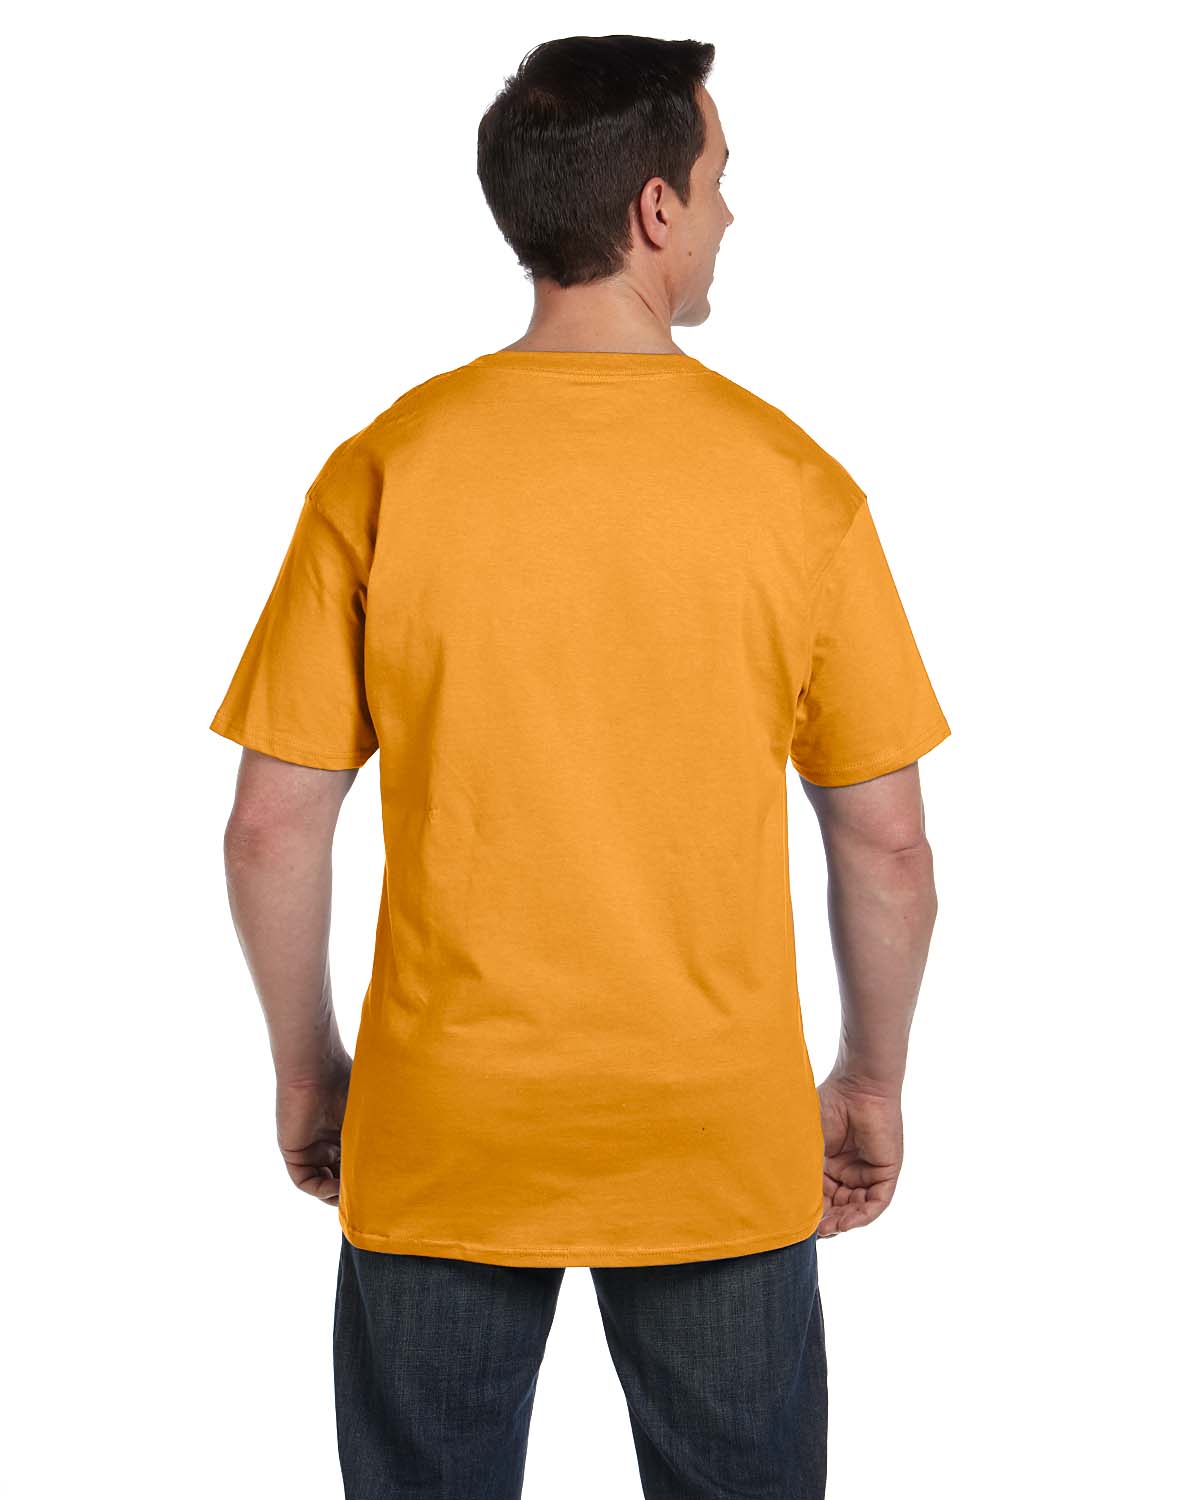 Hanes Mens Pocket T-Shirt 100% Heavy Cotton 6.1 oz Beefy T Big 2XL-3XL ...